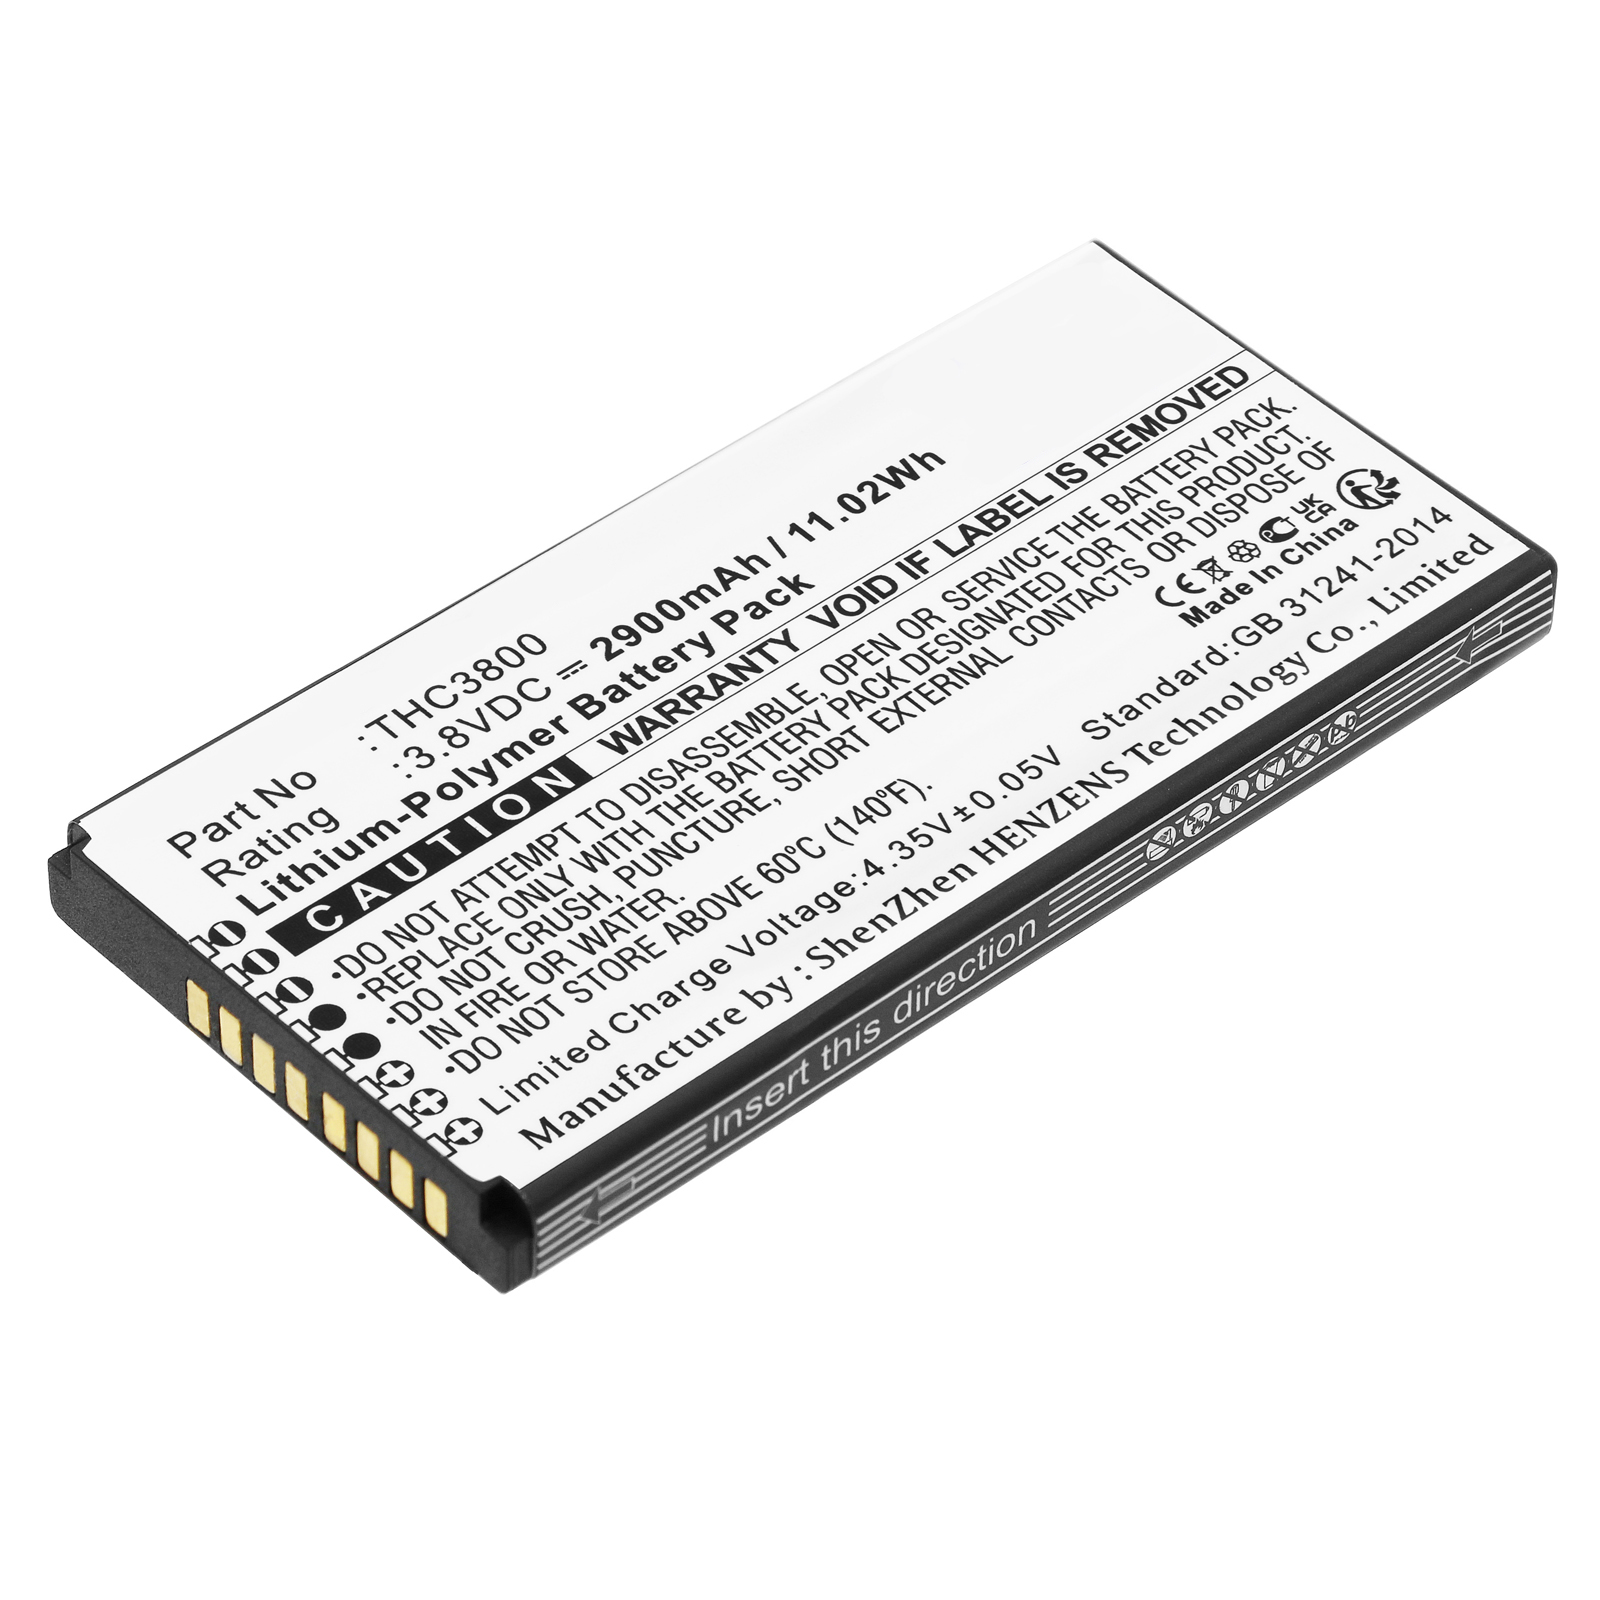 Synergy Digital Satellite Phone Battery, Compatible with Thuraya THC3800 Satellite Phone Battery (Li-Pol, 3.8V, 2900mAh)